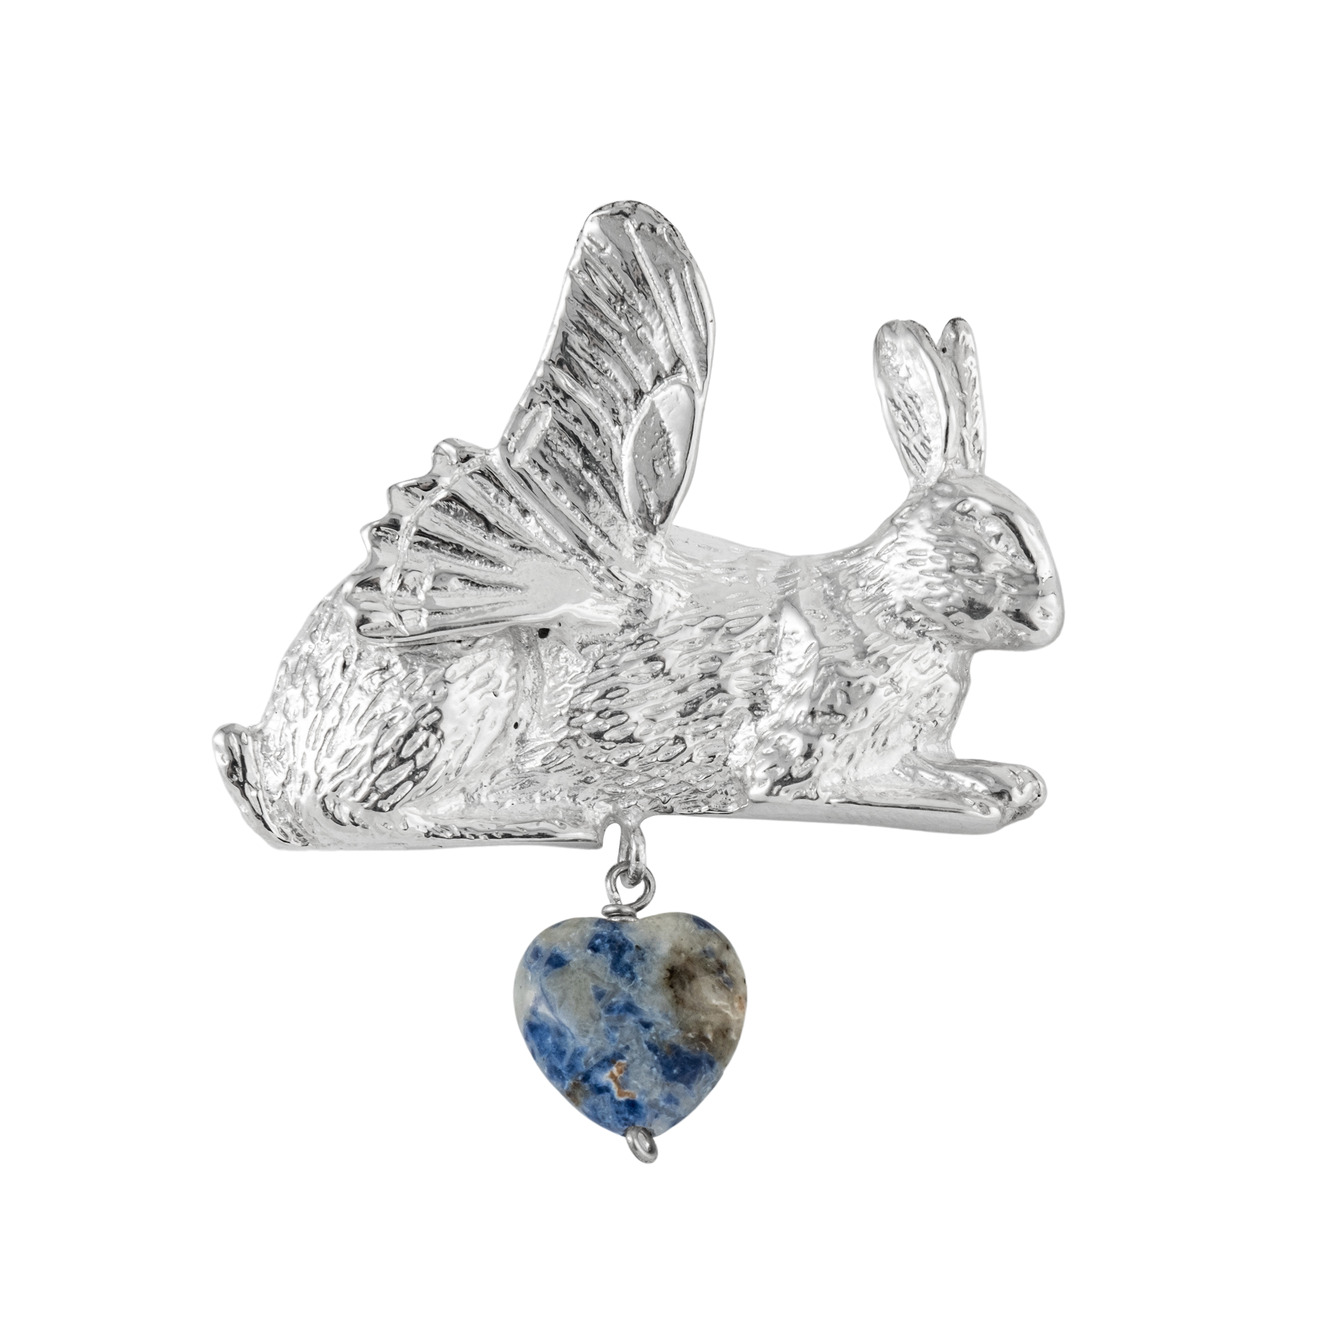 Fairy Table Посеребренная брошь Крылатый заяц с подвеской-сердцем из апатита цена и фото